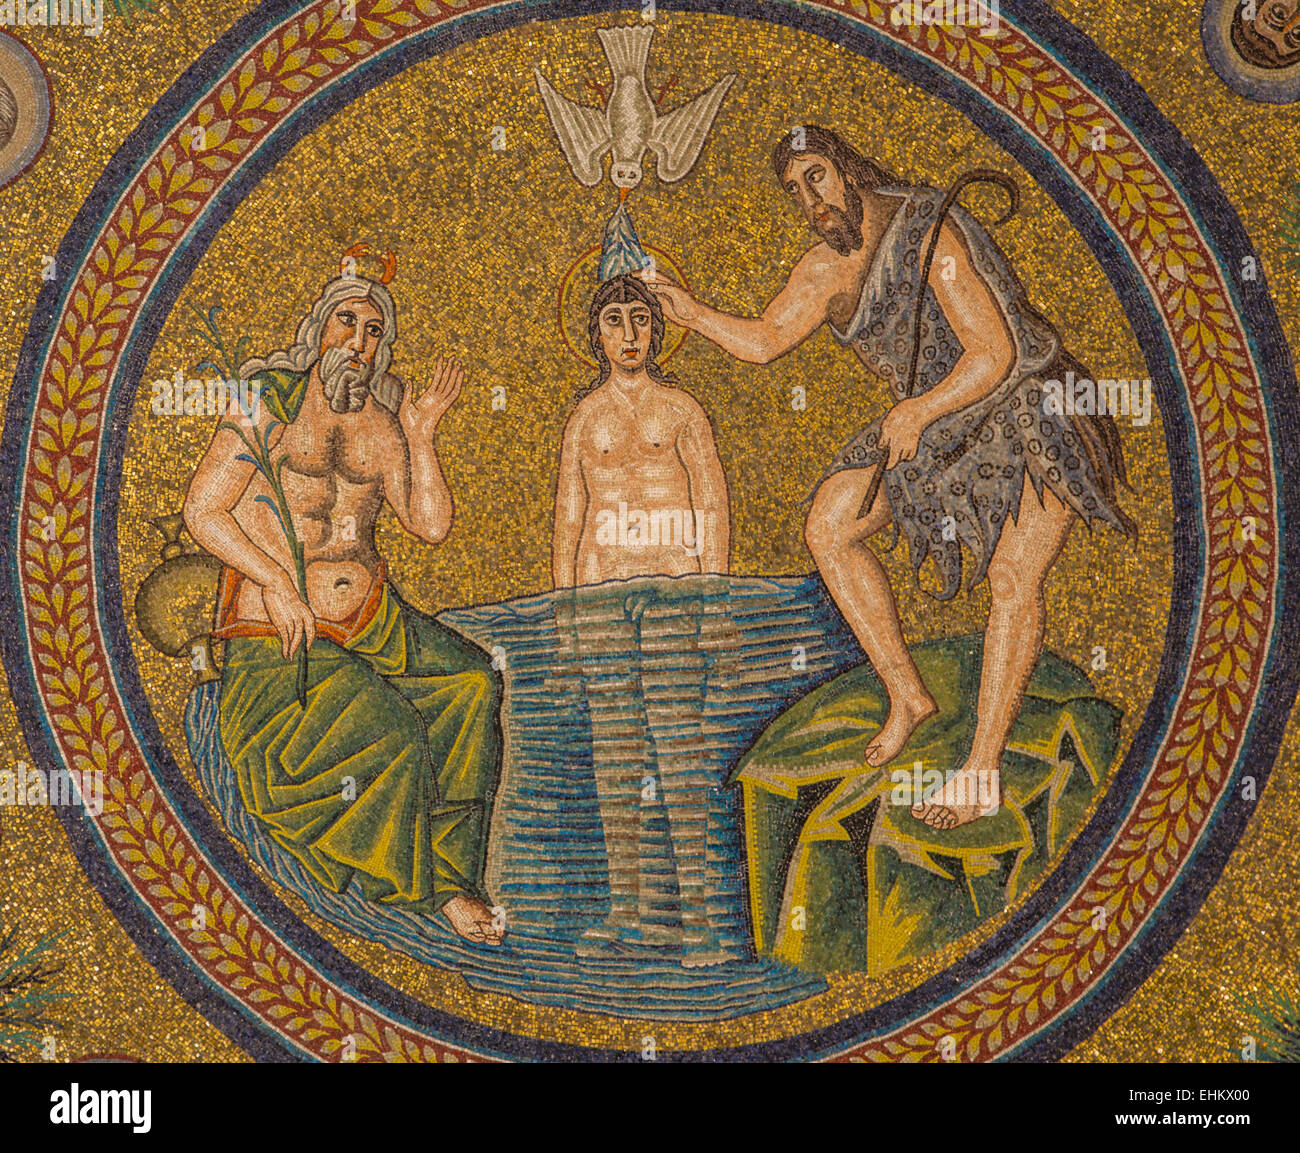 Mosaico del bautismo de Jesús por San Juan el Bautista, el baptisterio arriano, Ravenna, Italia Foto de stock